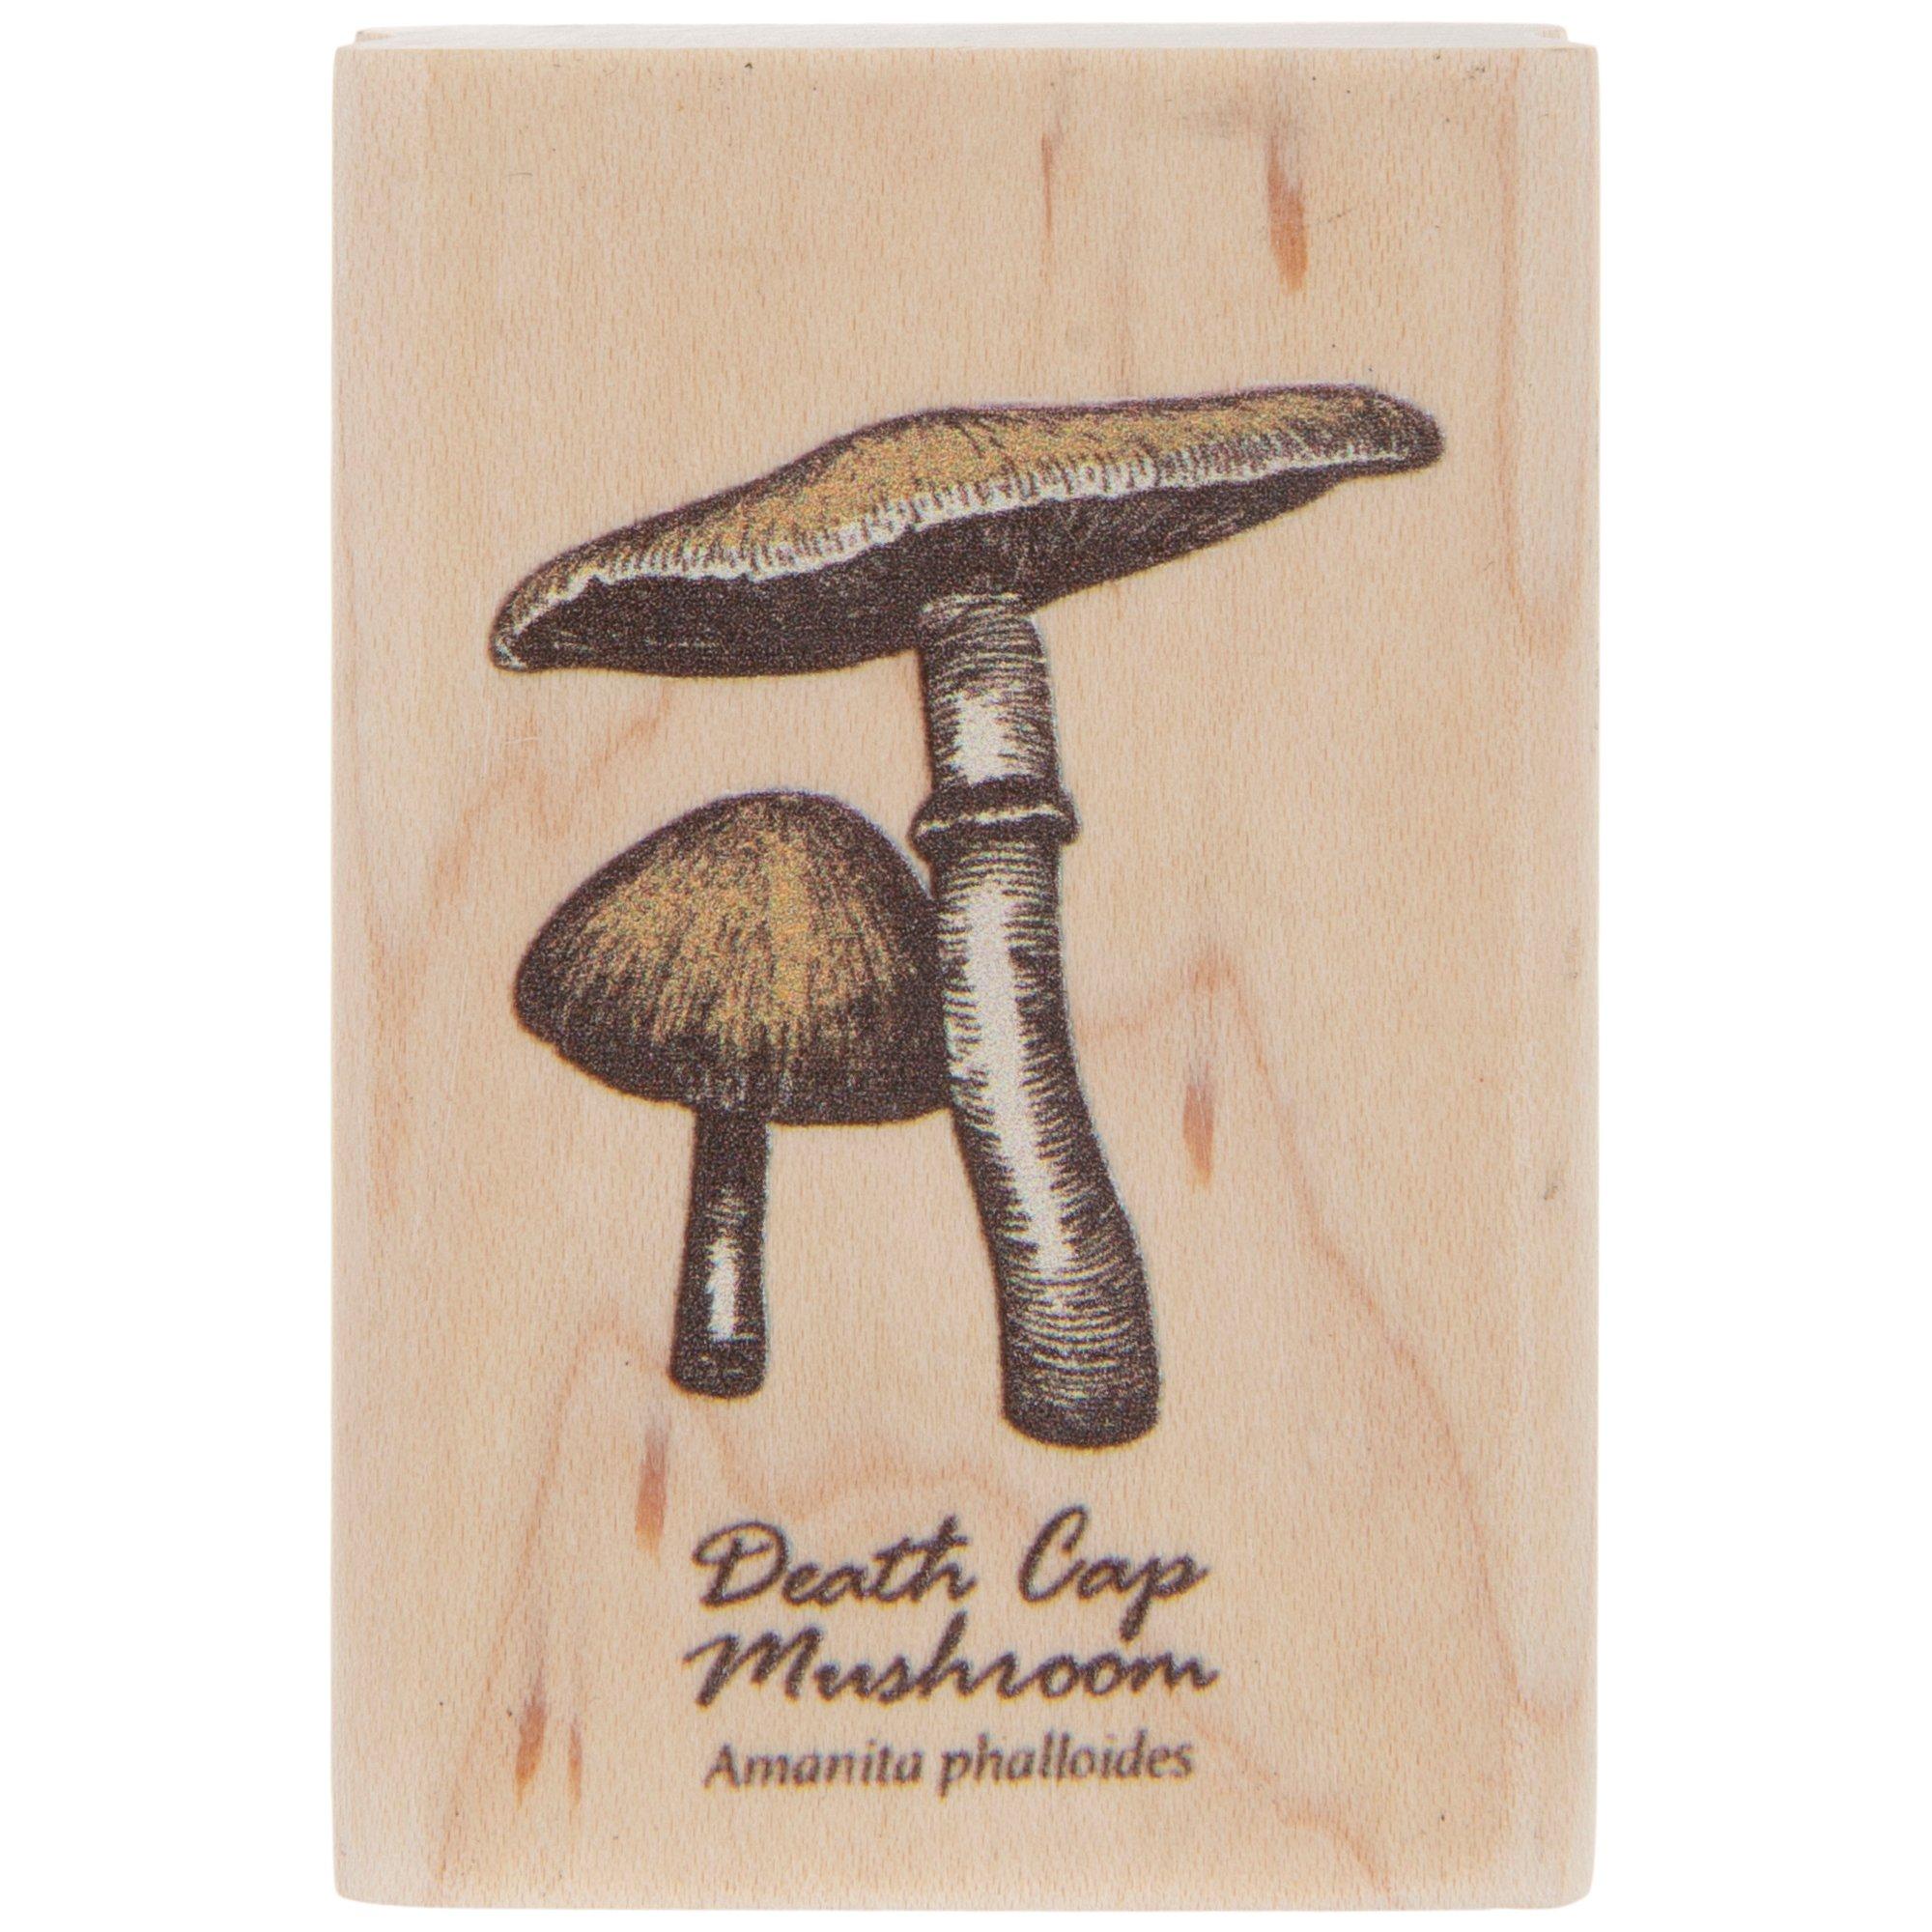 RISYPISY Mushroom Wooden Rubber Stamps, 10pcs Specimen Bottle Rubber Stamps  & 12 Sheets Jar Shape Cards for Card Making, DIY Craft, Scrapbooking